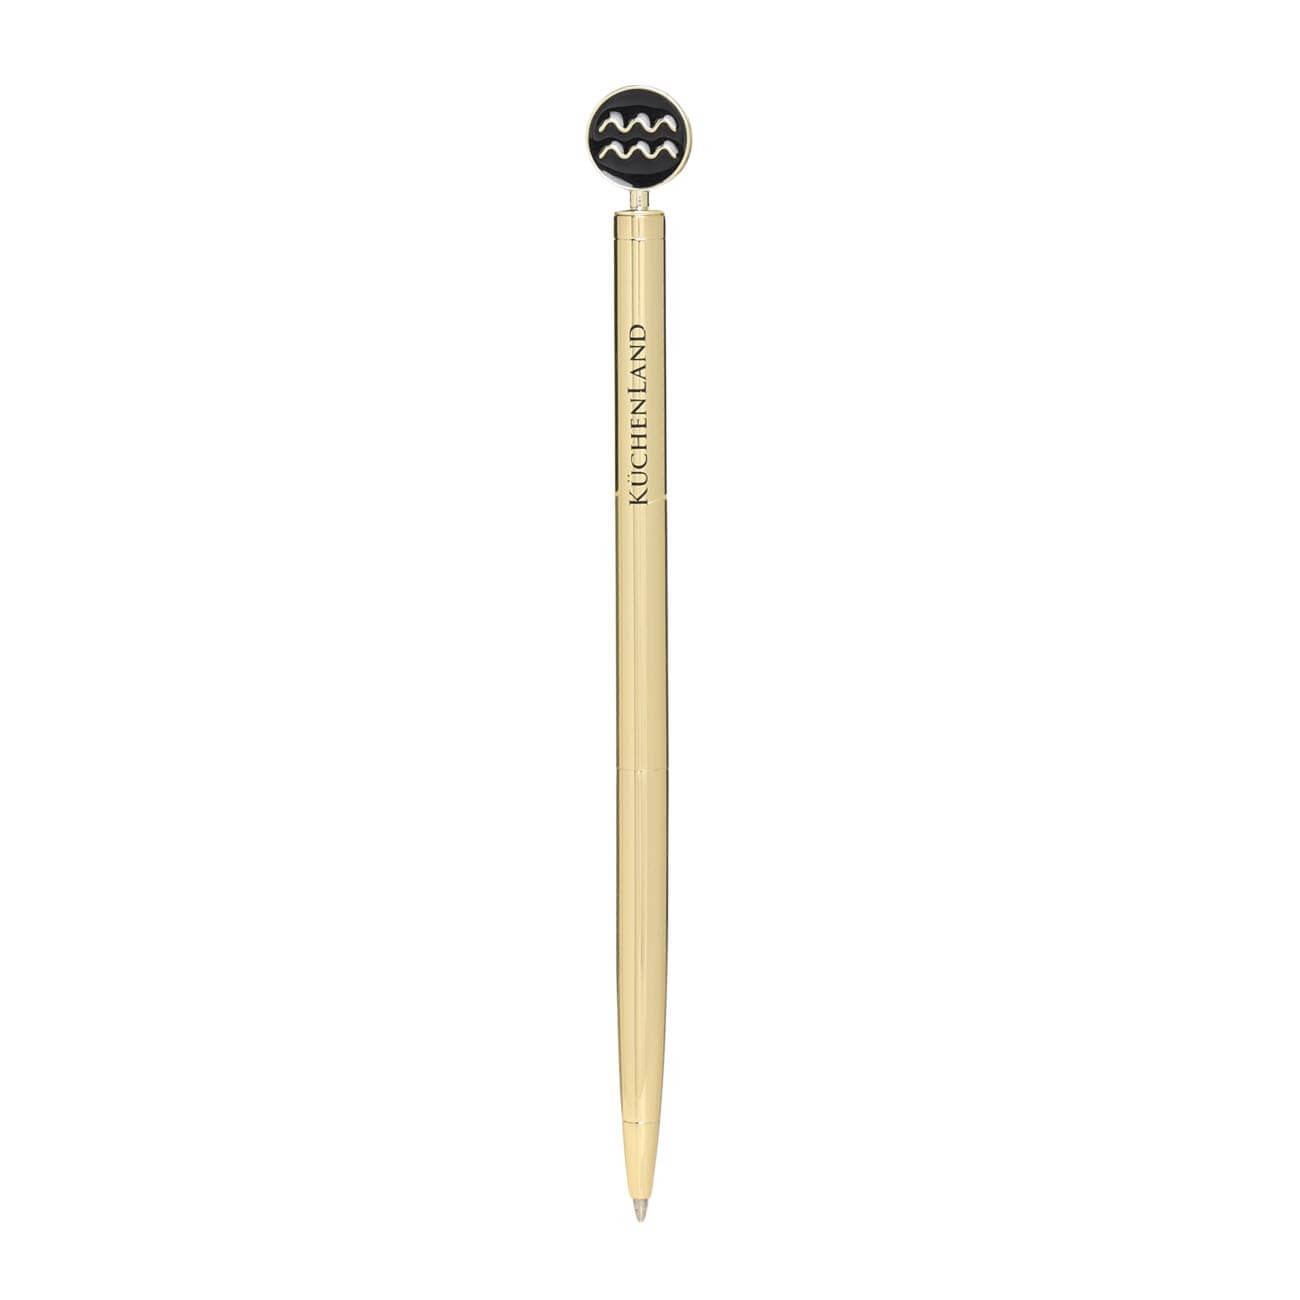 Ручка шариковая, 15 см, с фигуркой, сталь, золотисто-черная, Водолей, Zodiac